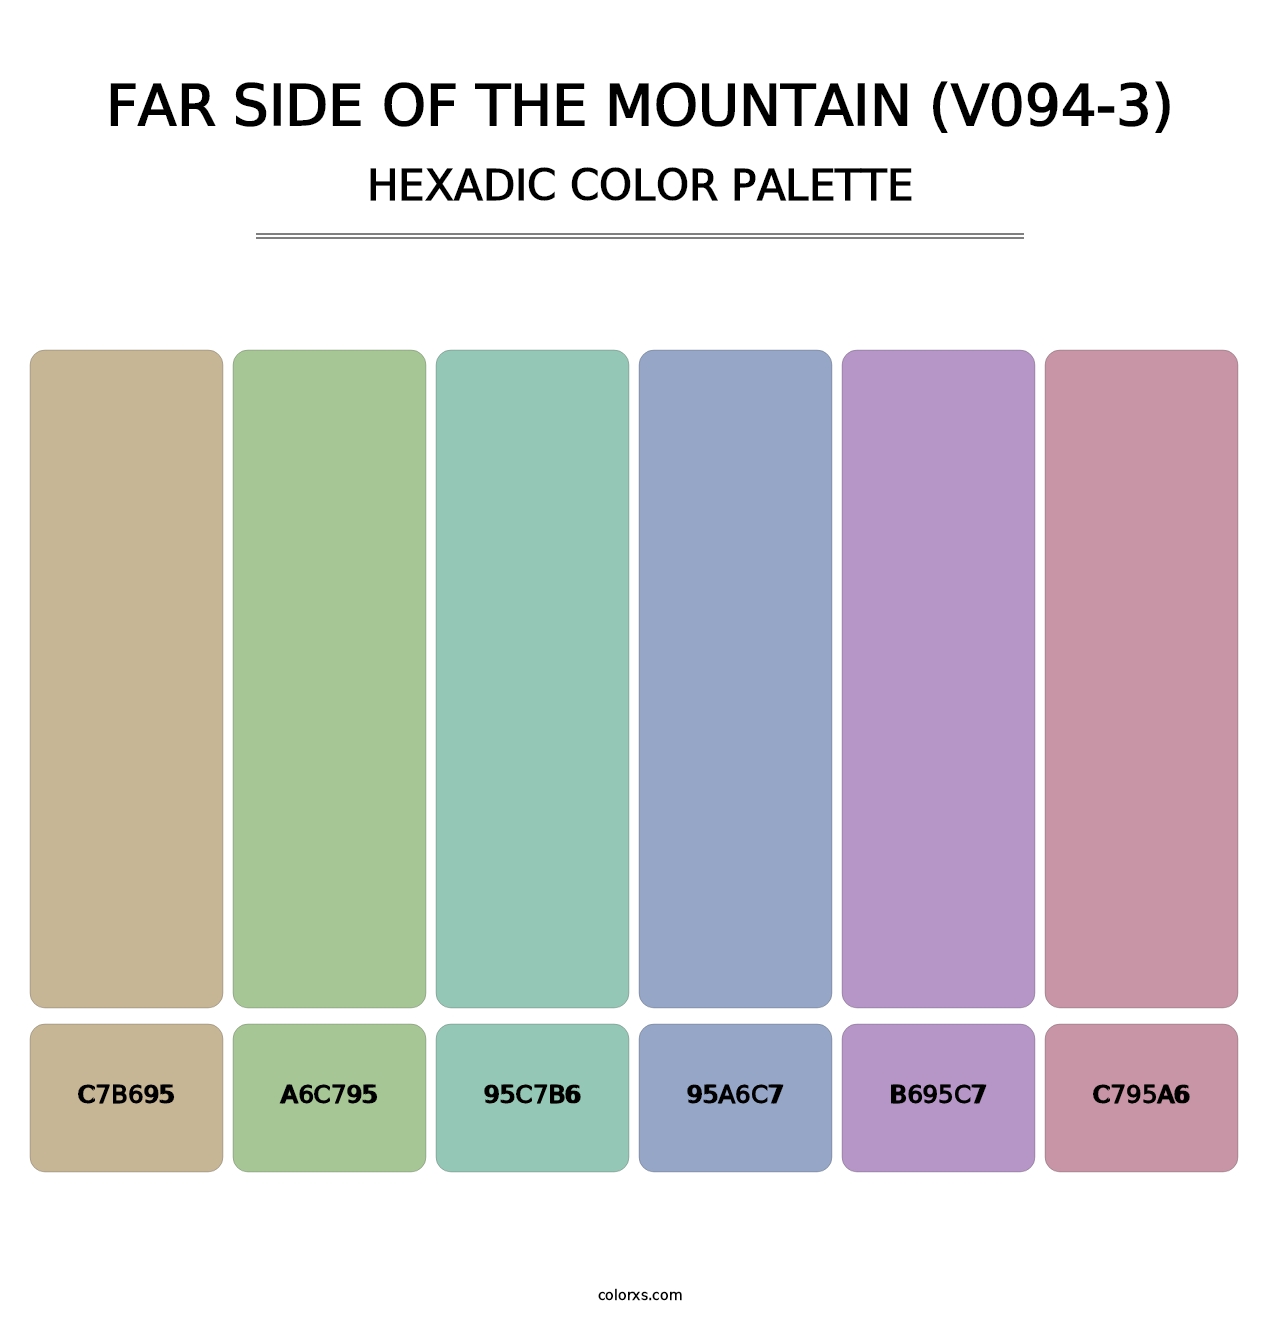 Far Side of the Mountain (V094-3) - Hexadic Color Palette